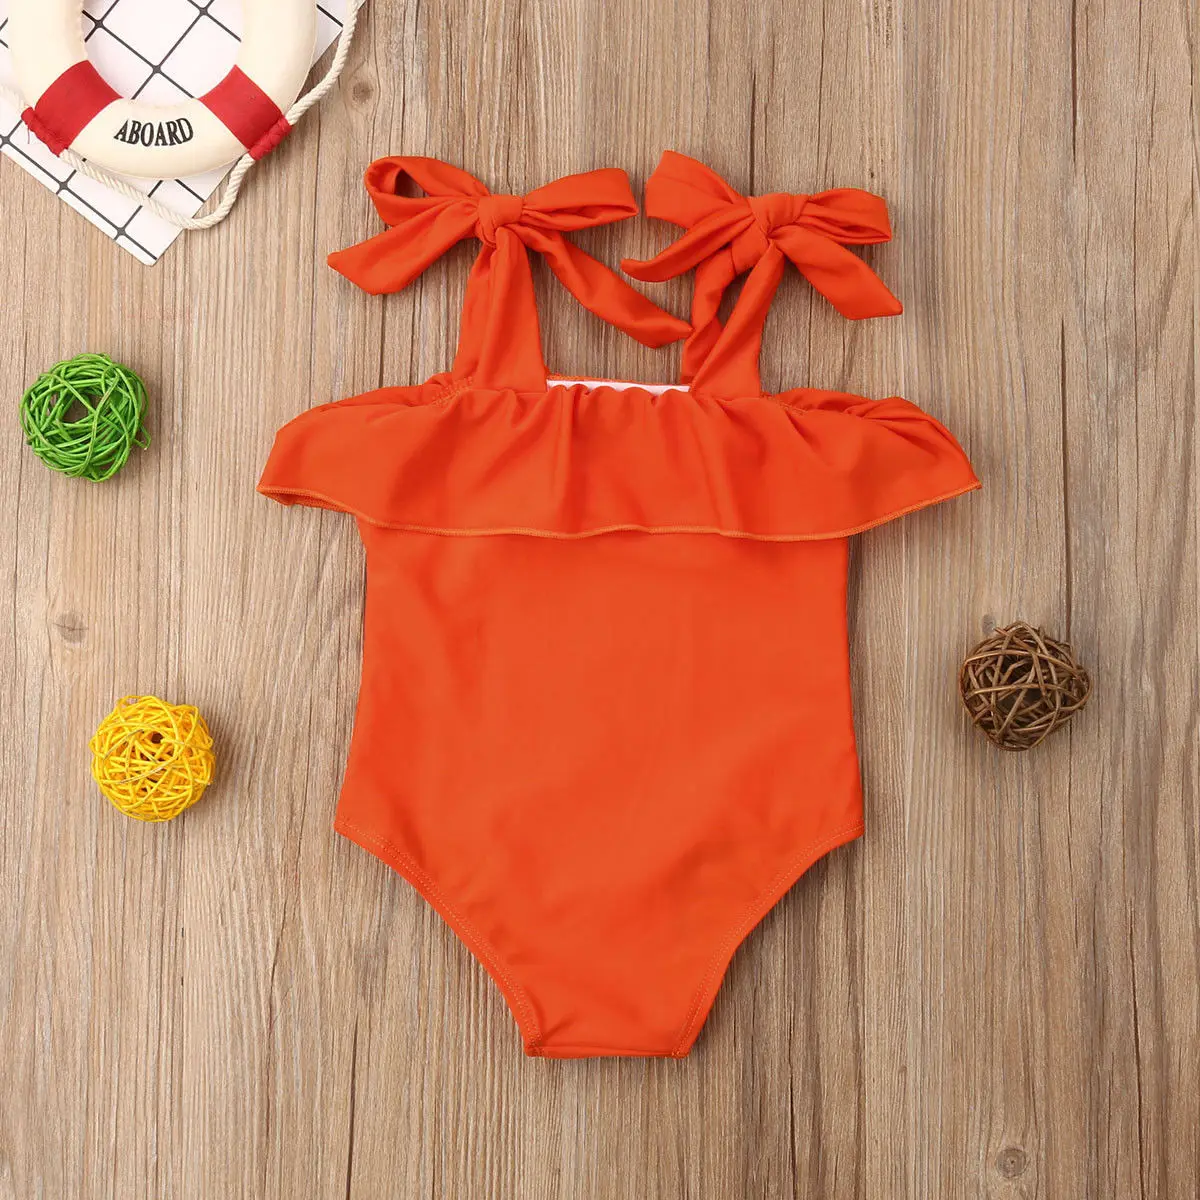 Сплошной для новорожденного детский купальник с оборками на лямках для девочек, пляжная одежда, купальный костюм, купальный костюм